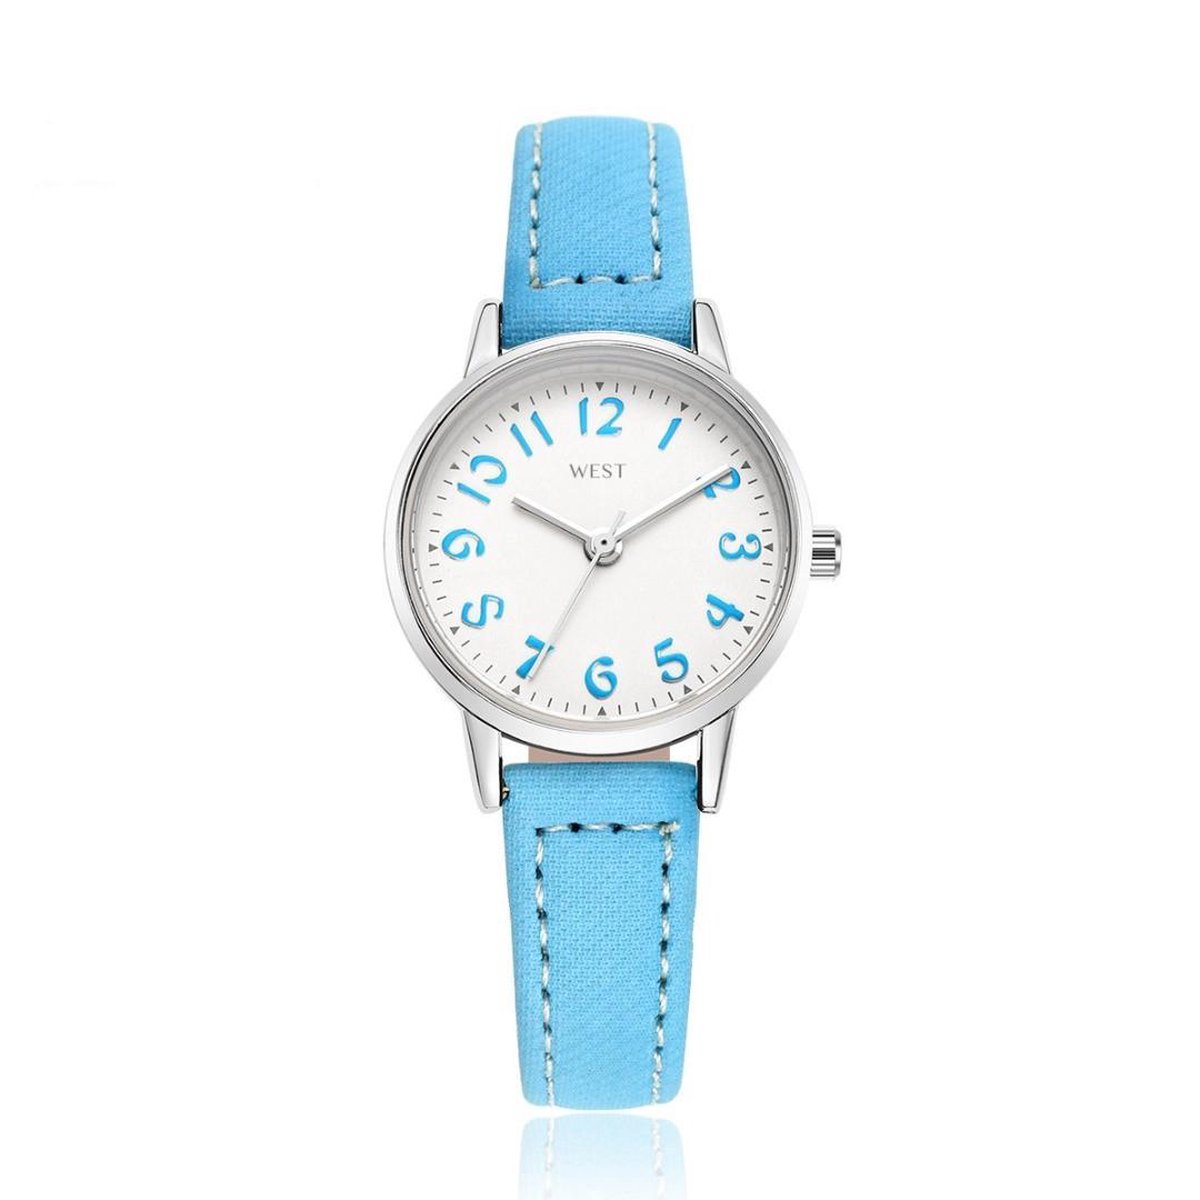 West Watch - model Rose - analoog kinder/ tiener horloge - Ø 23 mm - lichtblauw/zilverkleurig